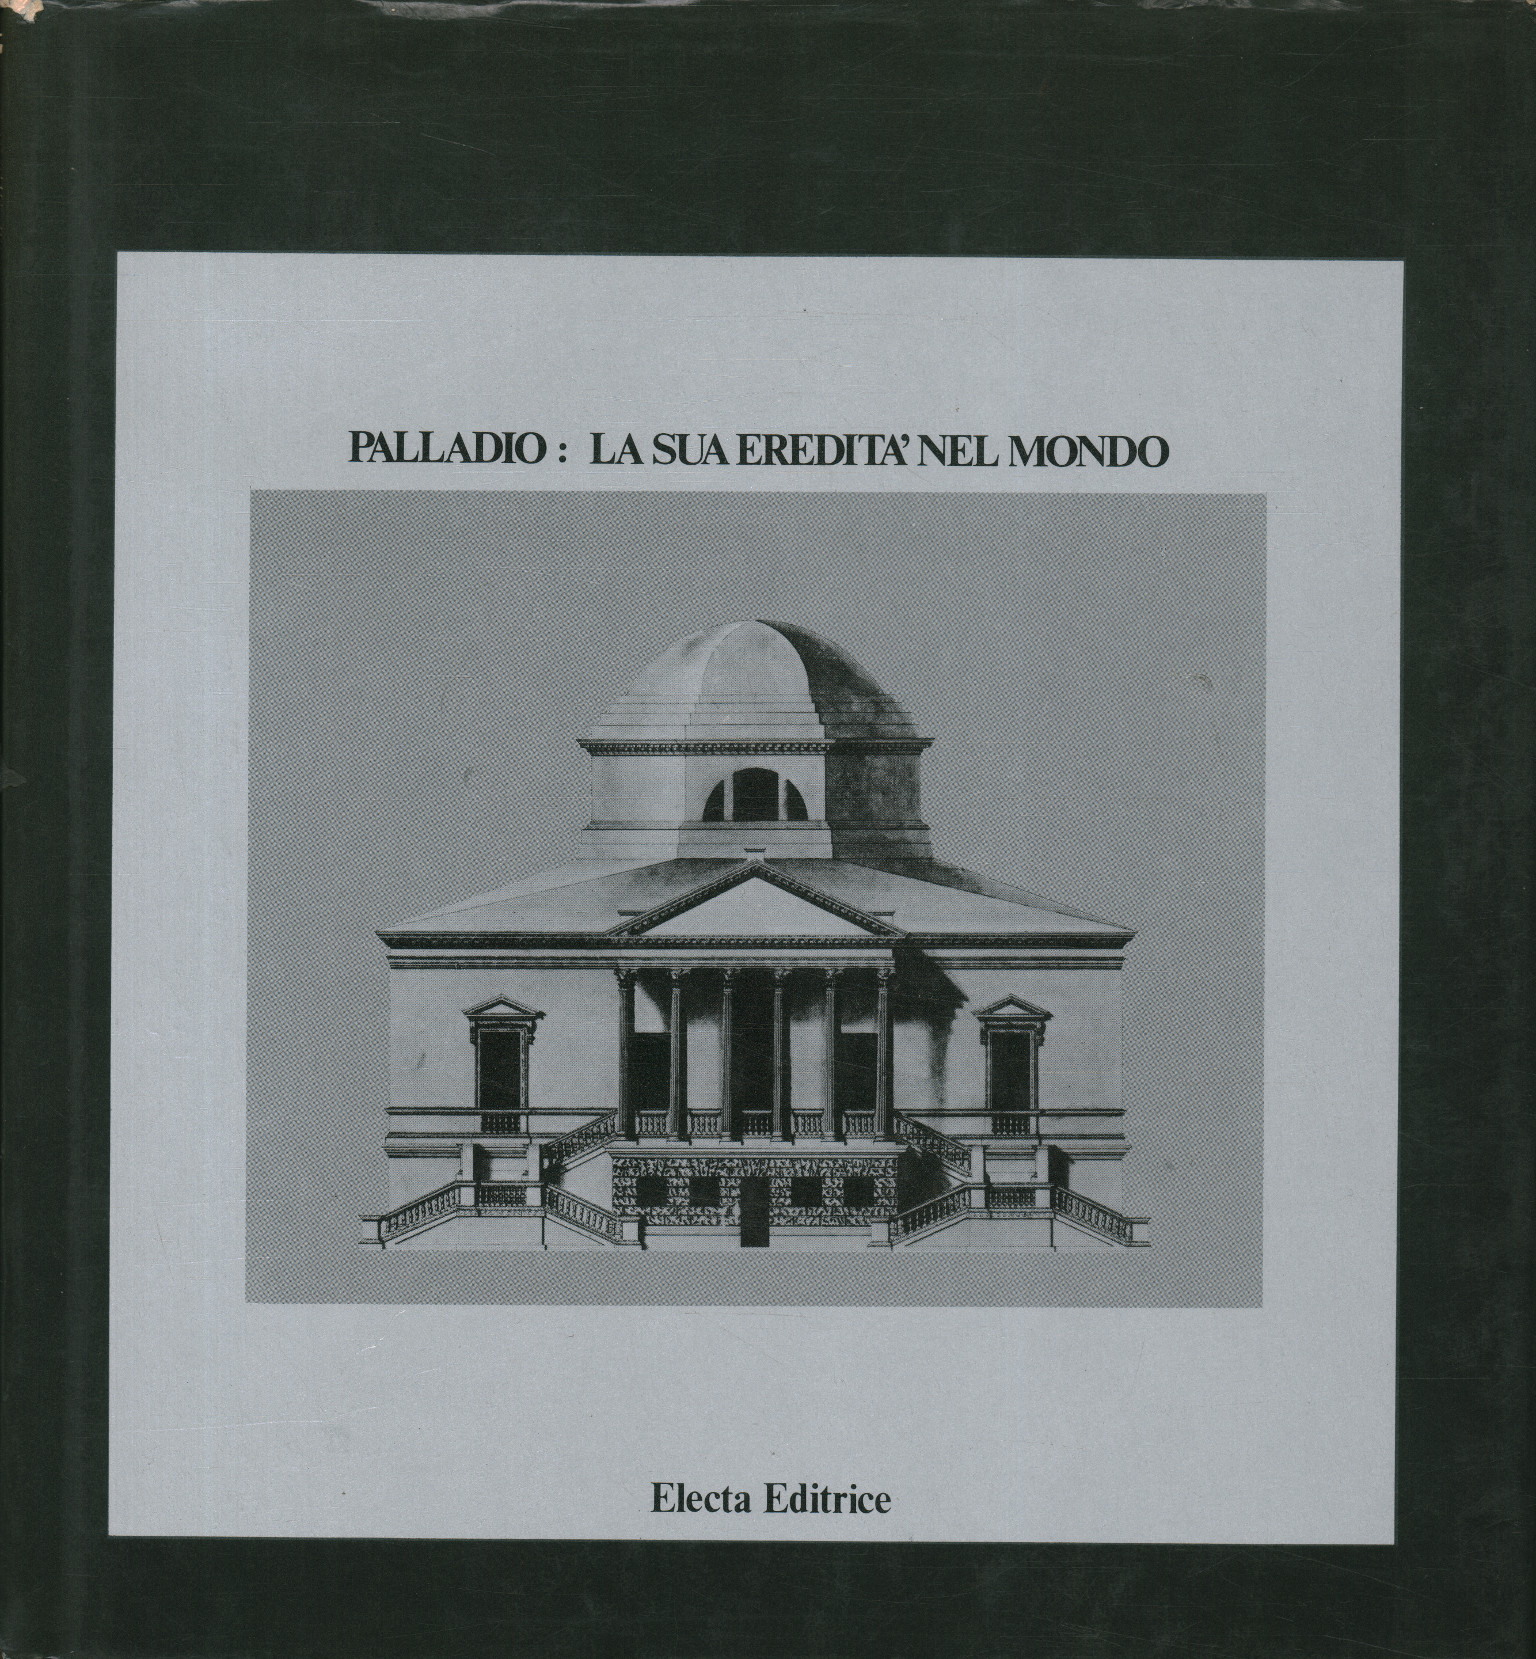 Palladio: sein Erbe in der Welt